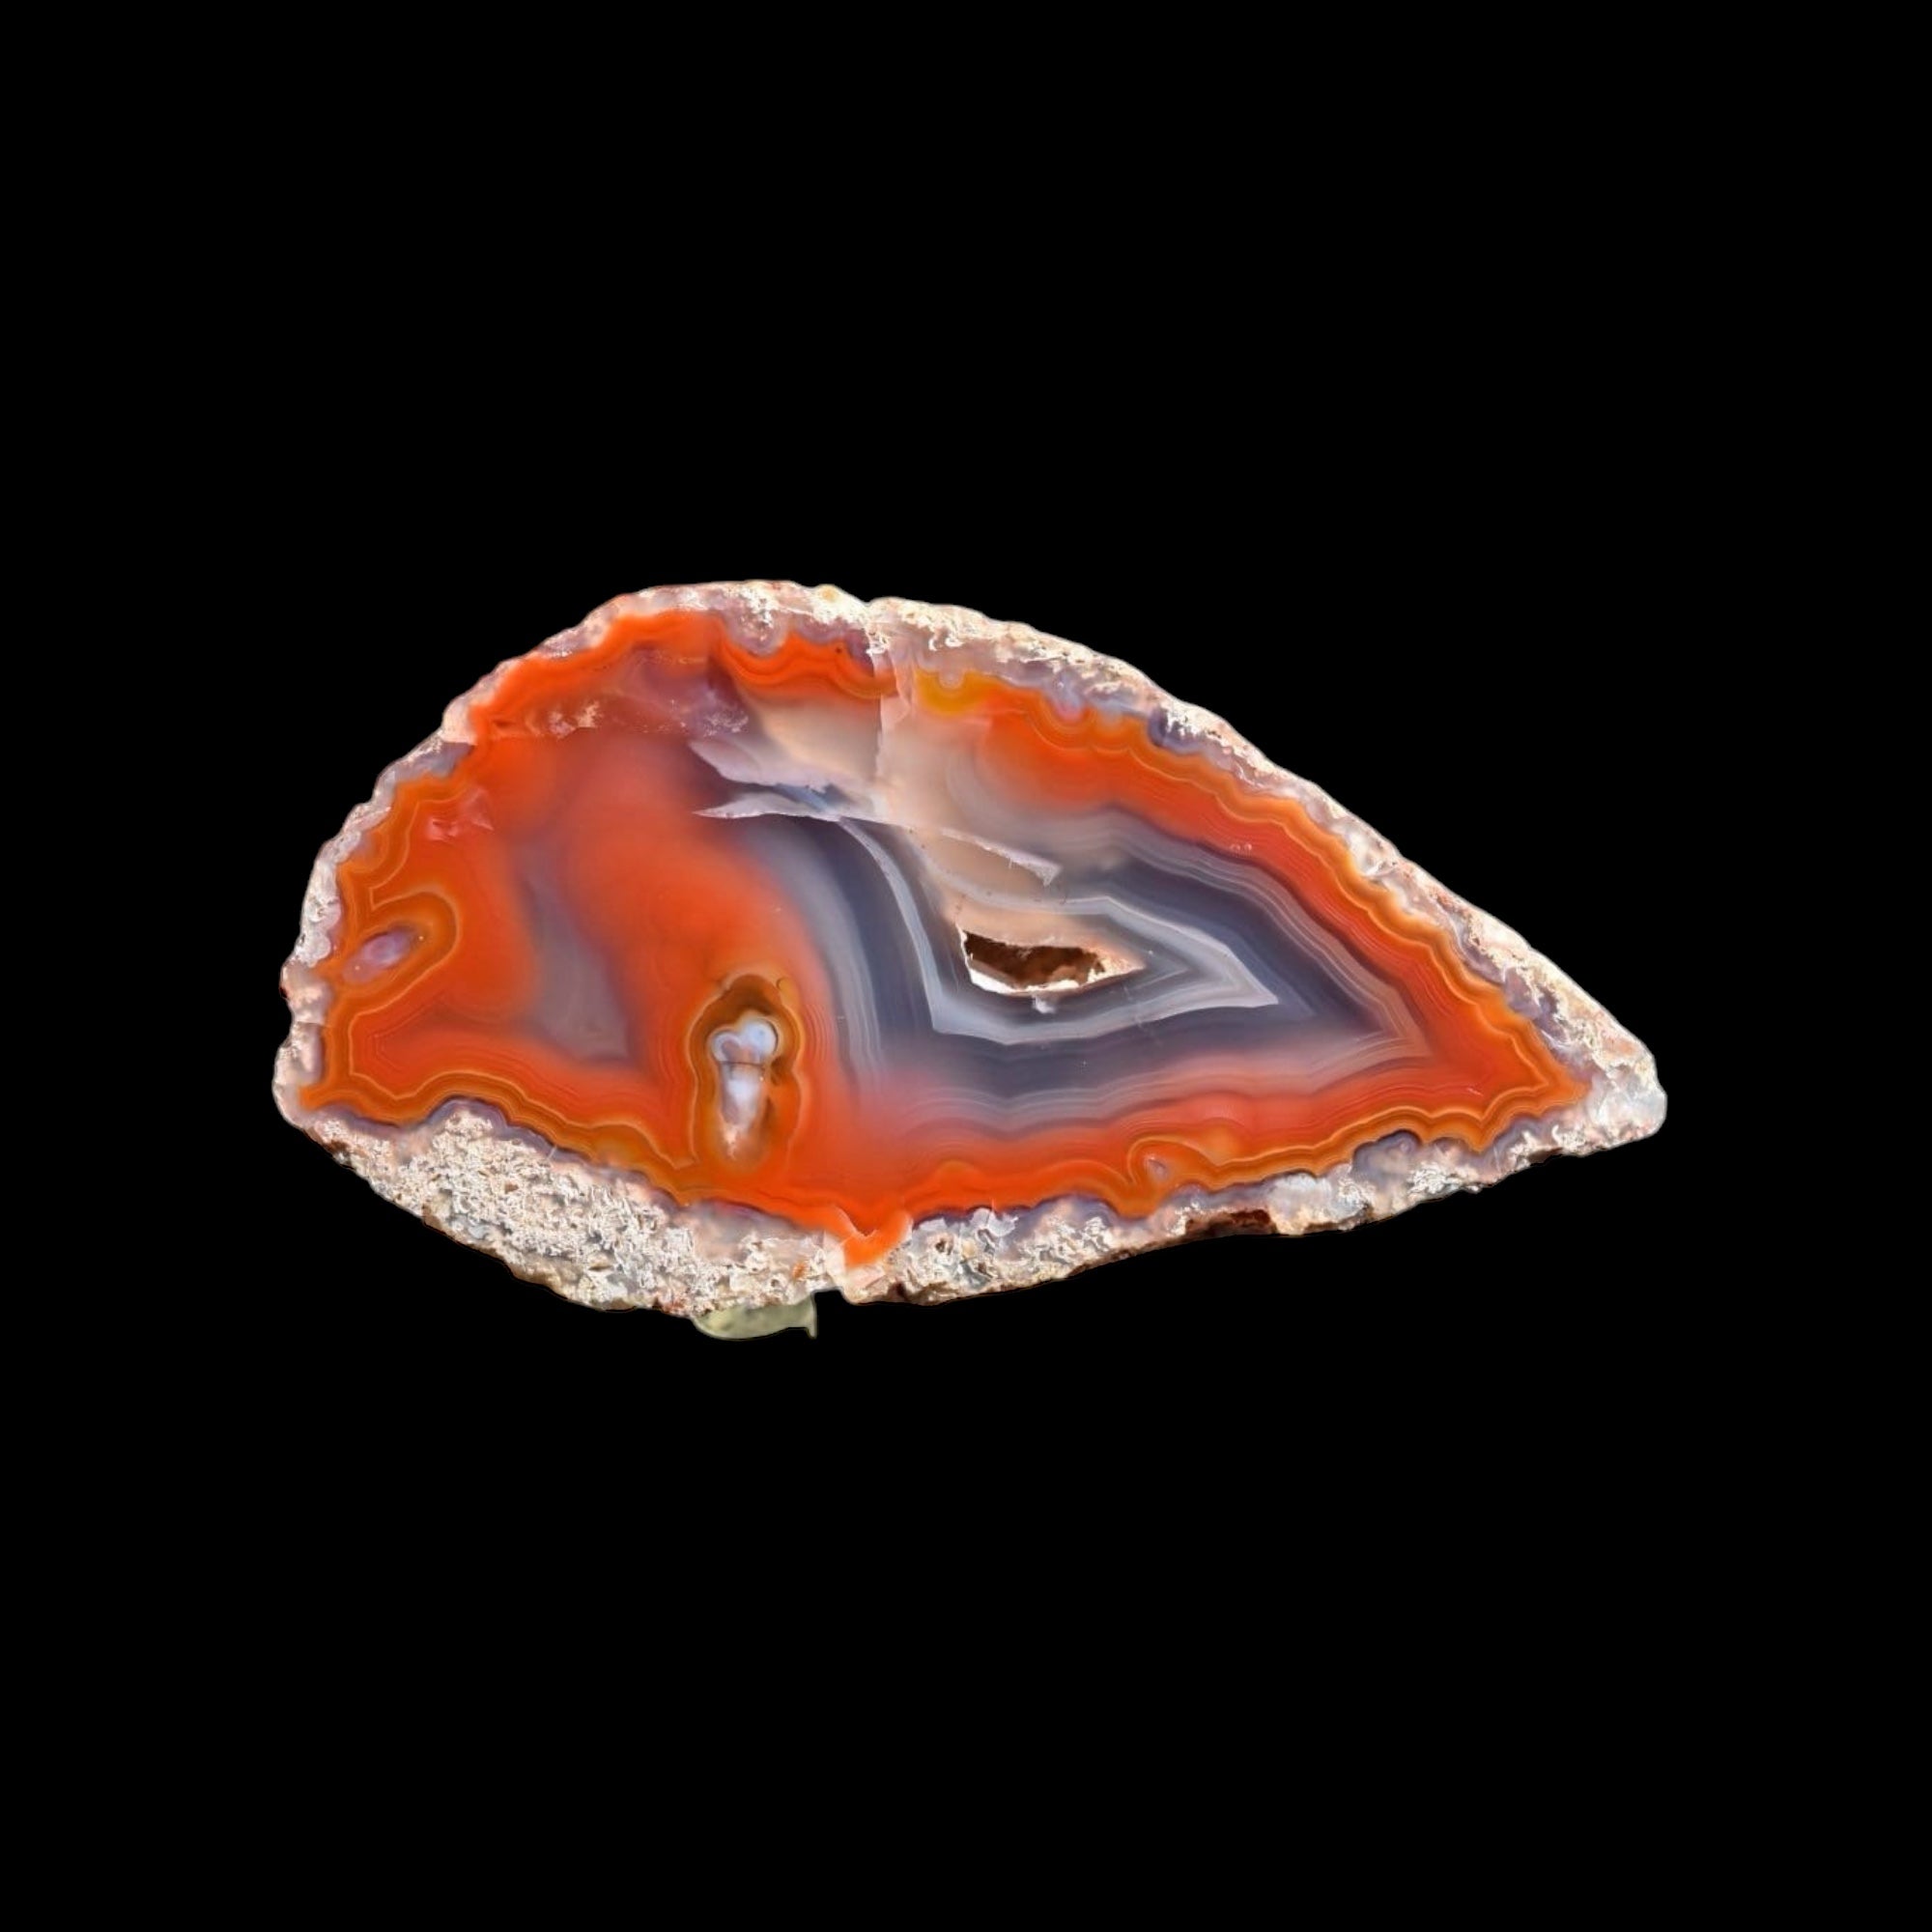 COYAMITO AGATE 01-FB01-2B - Del Rey Agates Gems & Minerals Inc.